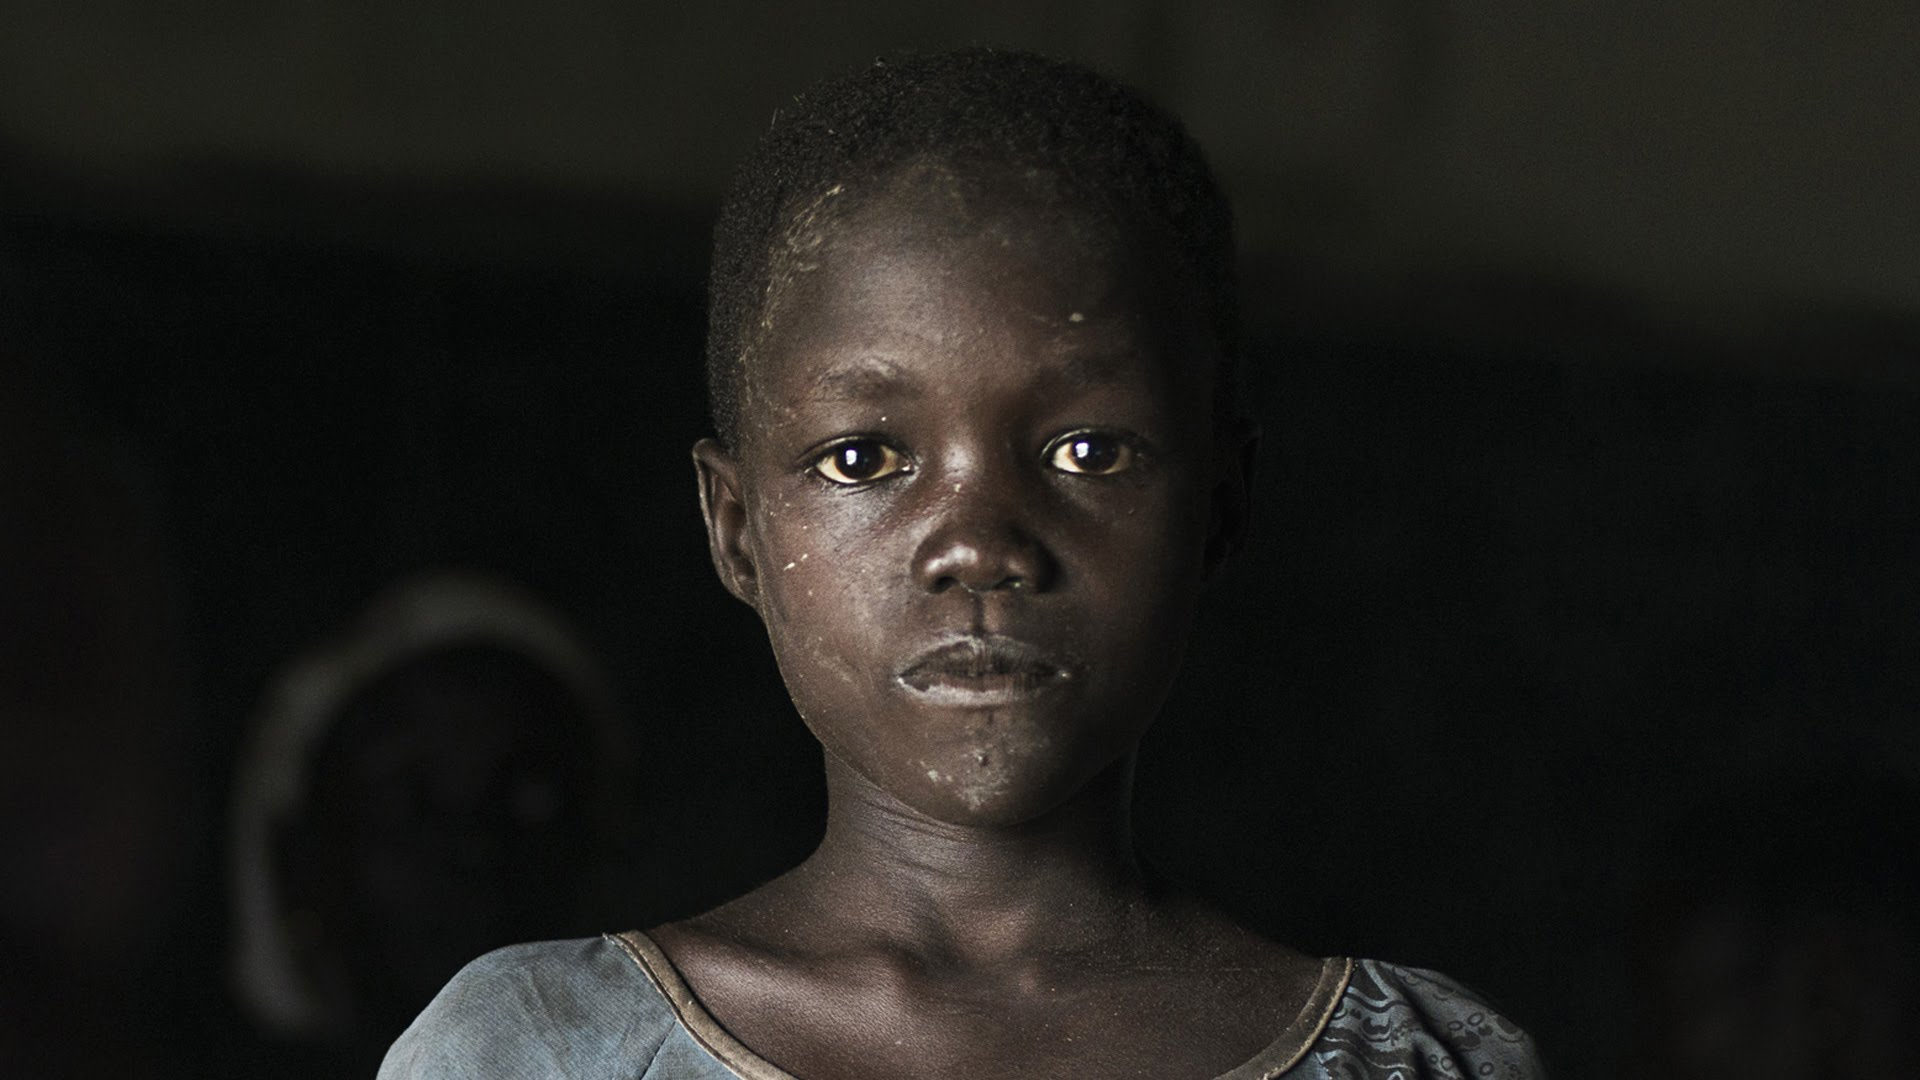 Les enfants souffrent particulièrement du conflit armé au Soudan du Sud (Photo: Youtube)